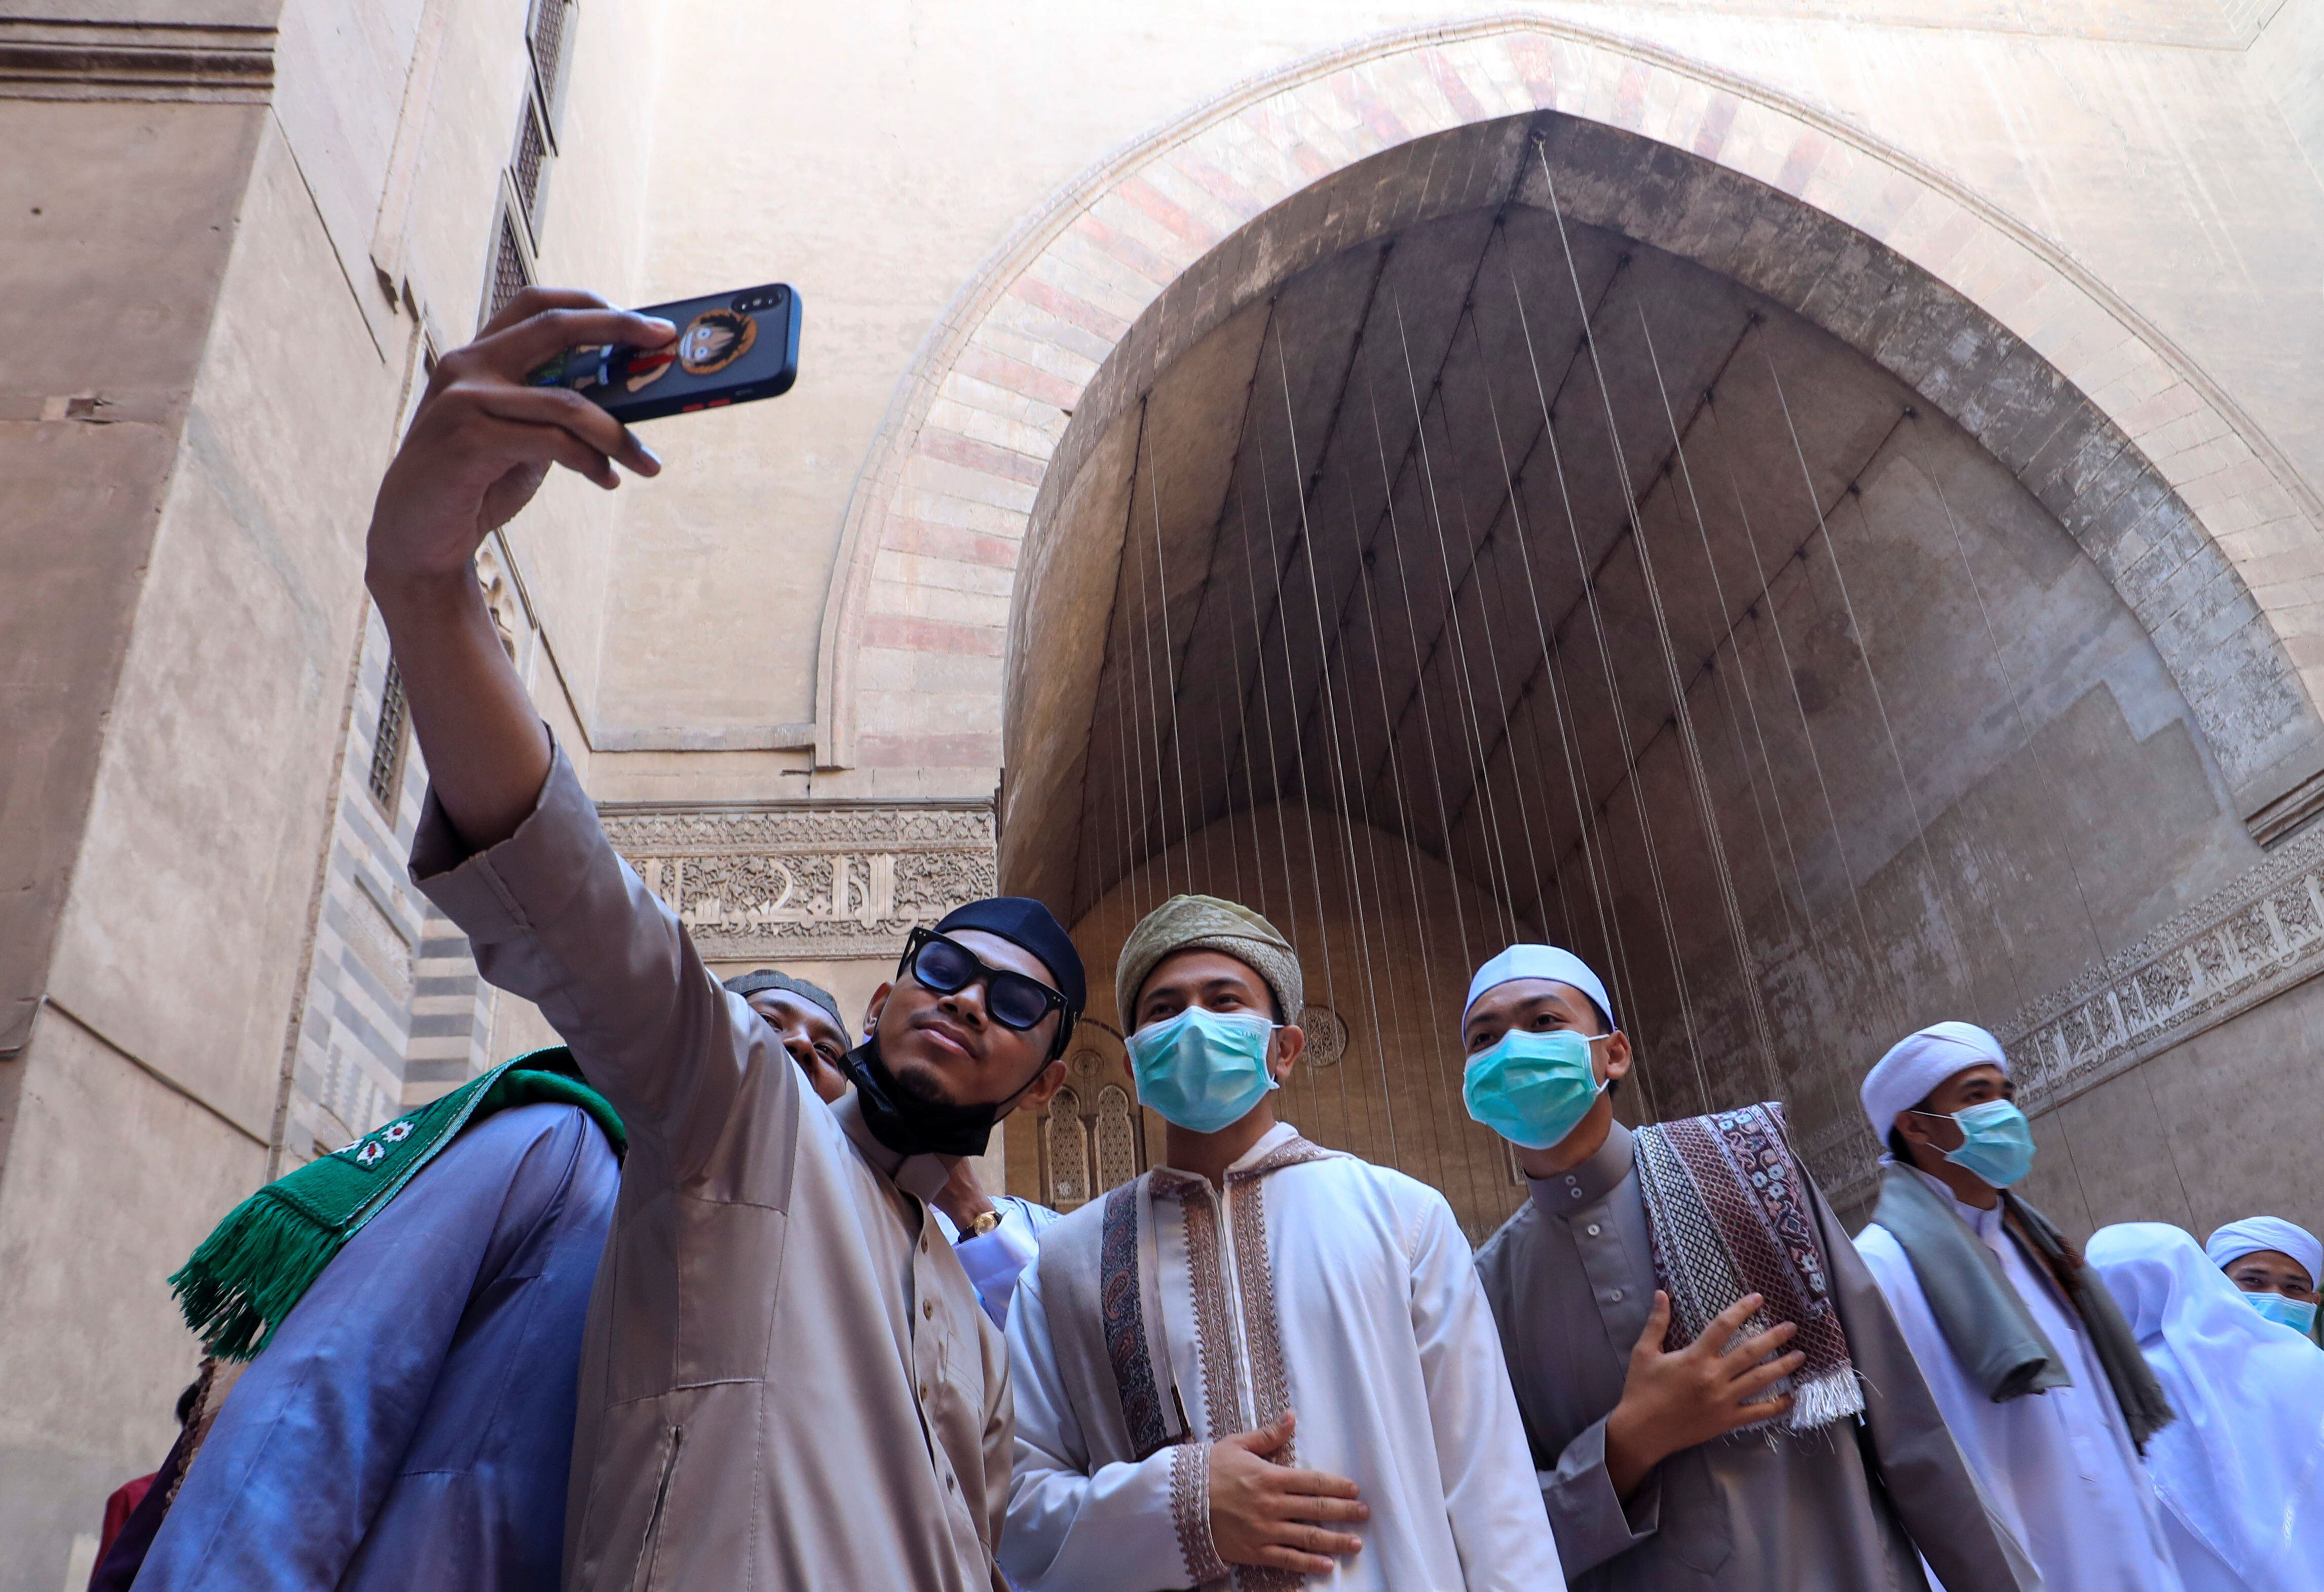 Fieles musulmanes se toman un selfie después de las oraciones de Eid al-Fitr que marcan el final del Ramadán en el interior de la mezquita Al Sultan Hassan en el viejo Cairo, Egipto, el 13 de mayo de 2021 (REUTERS/Amr Abdallah Dalsh)